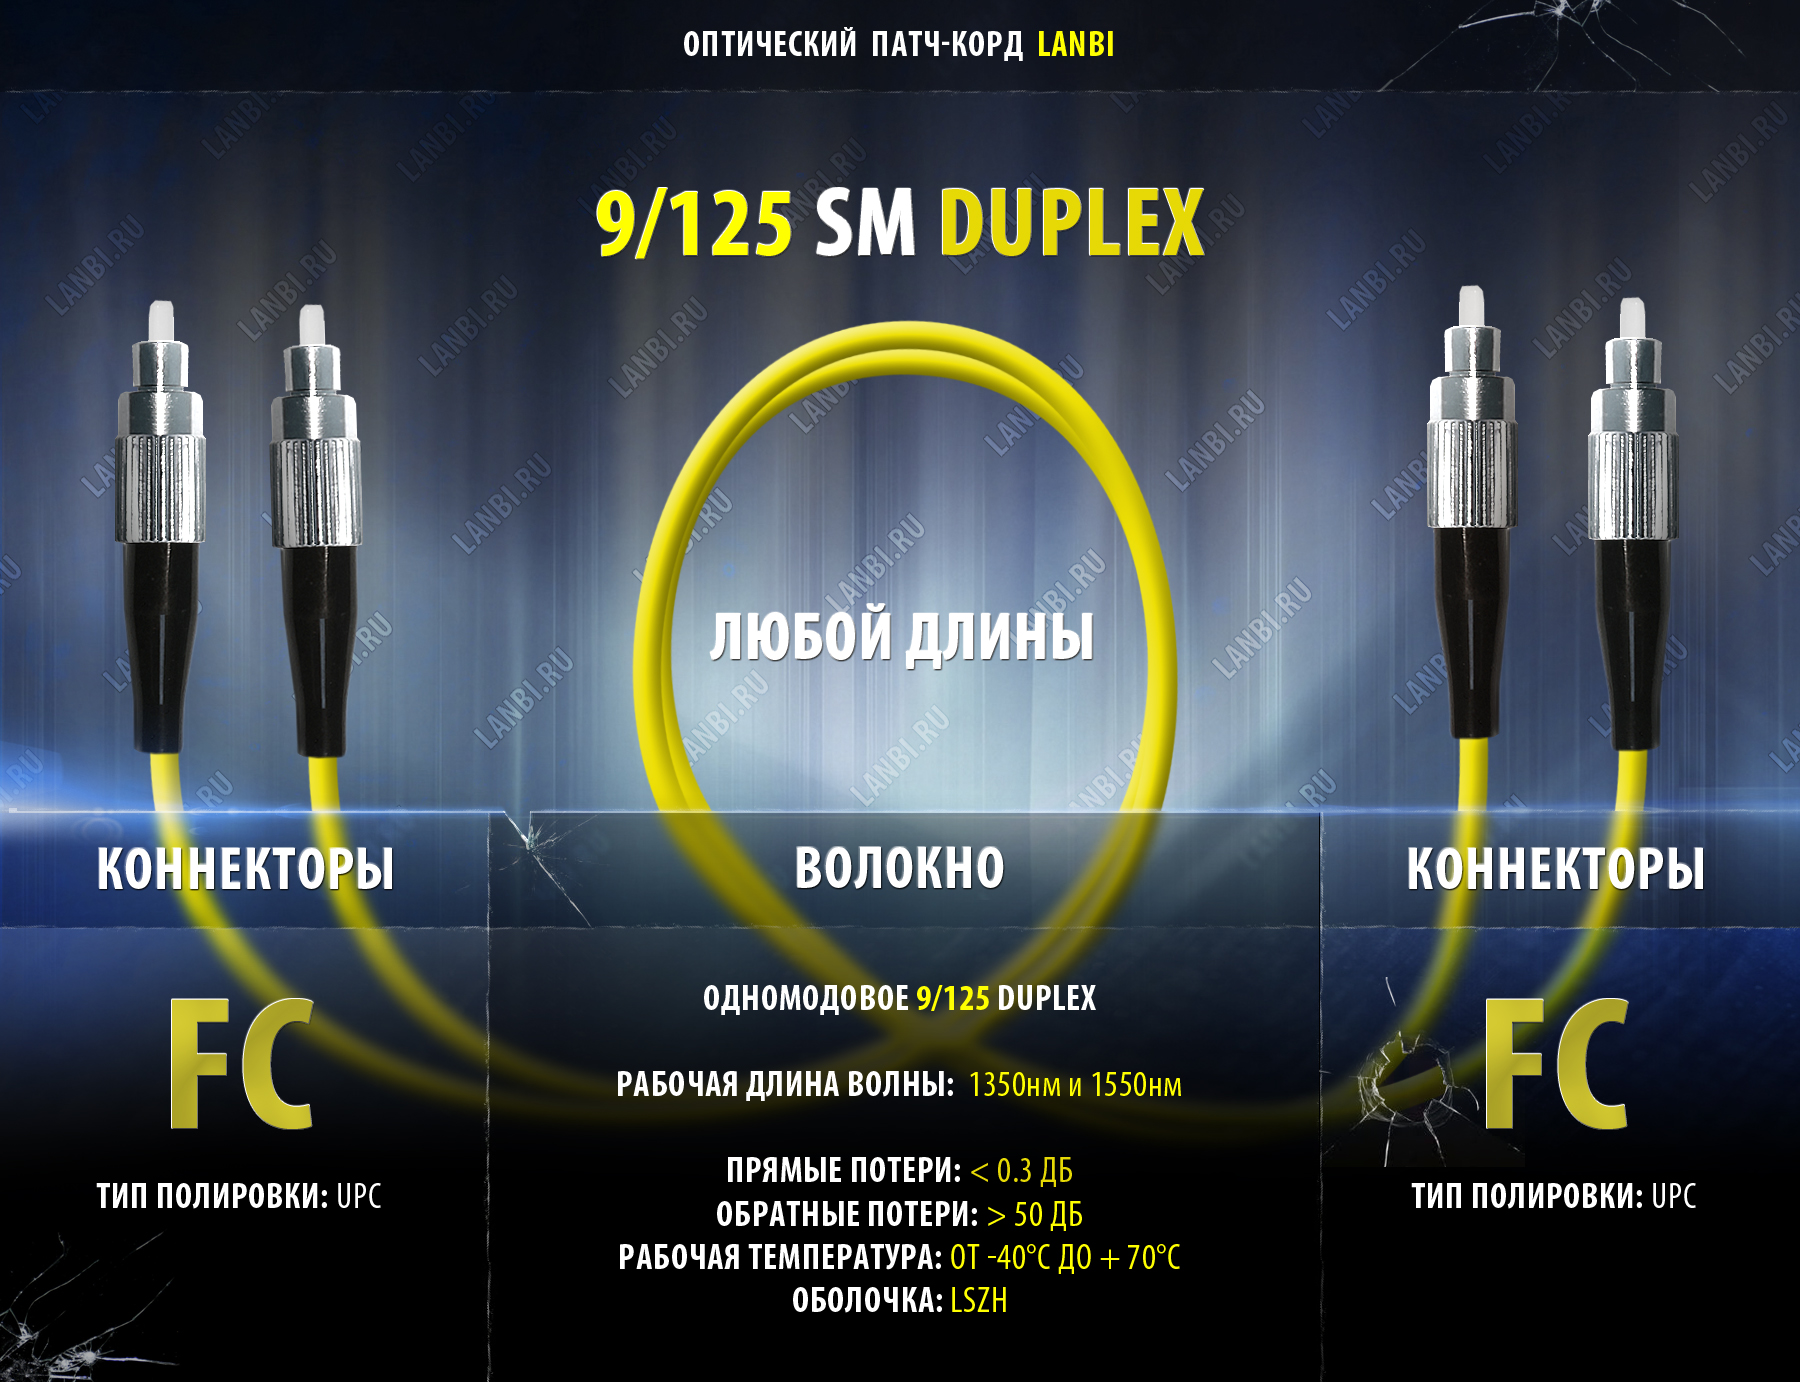    duplex 9/125 2FC-2FC, UPC, 1.5 